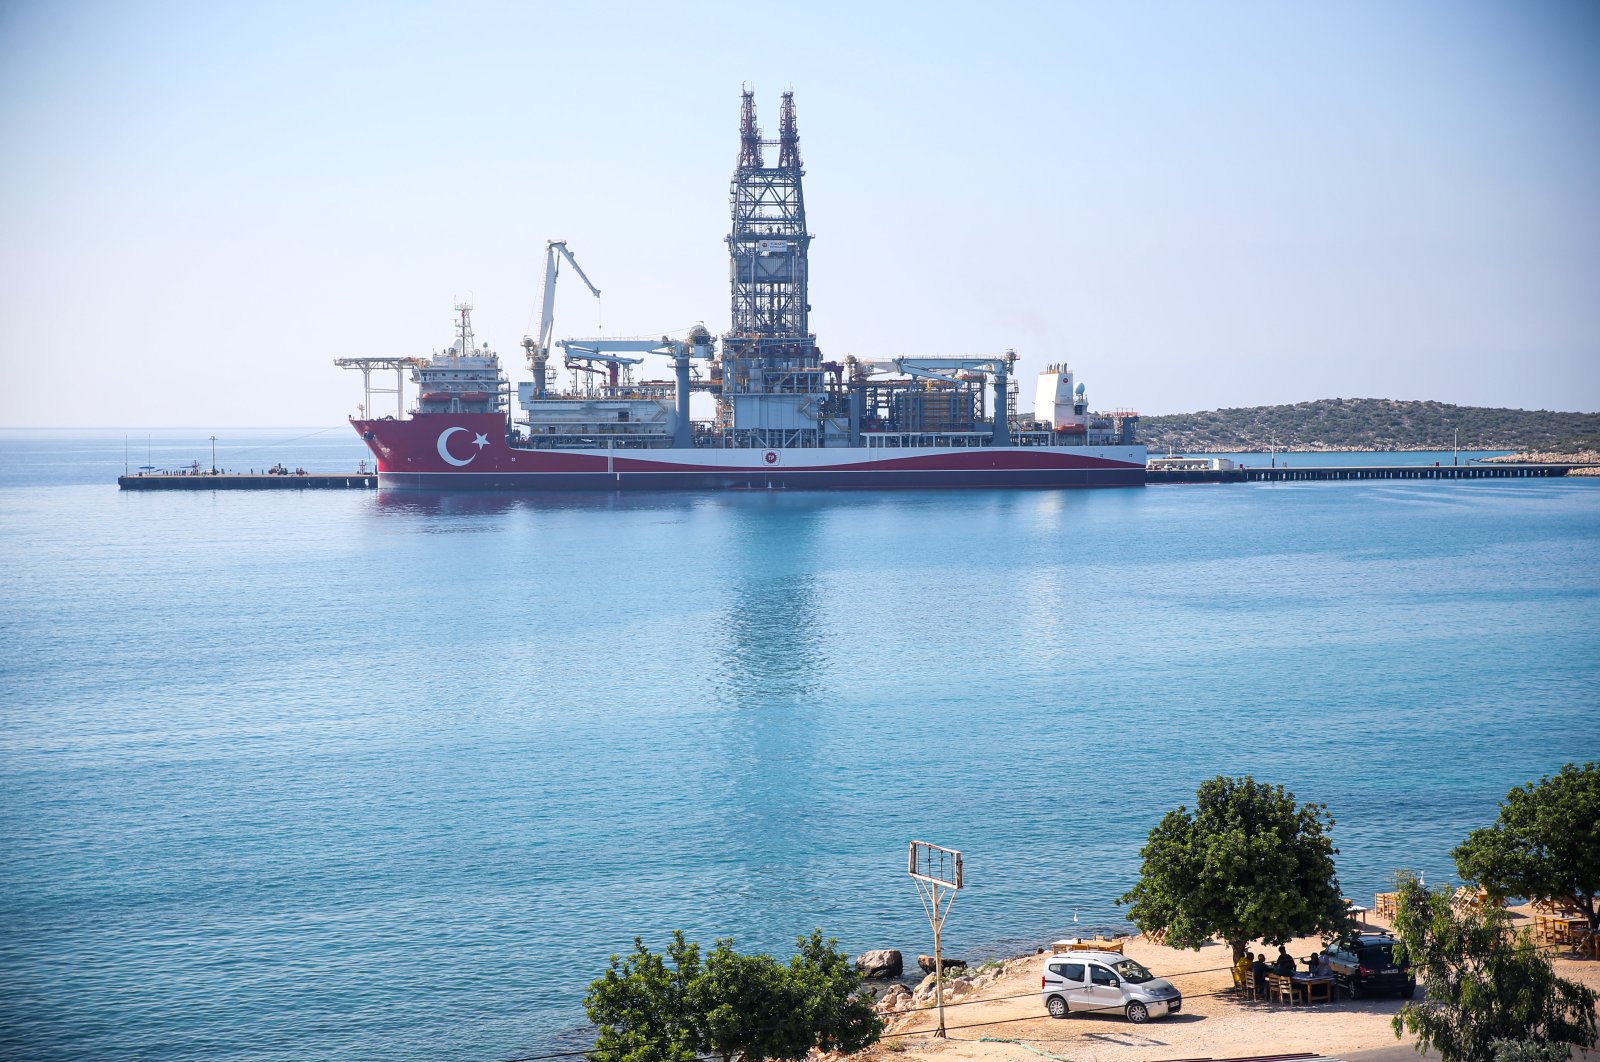 Turki akan mengirim kapal pengeboran barunya untuk eksplorasi di Med bulan depan